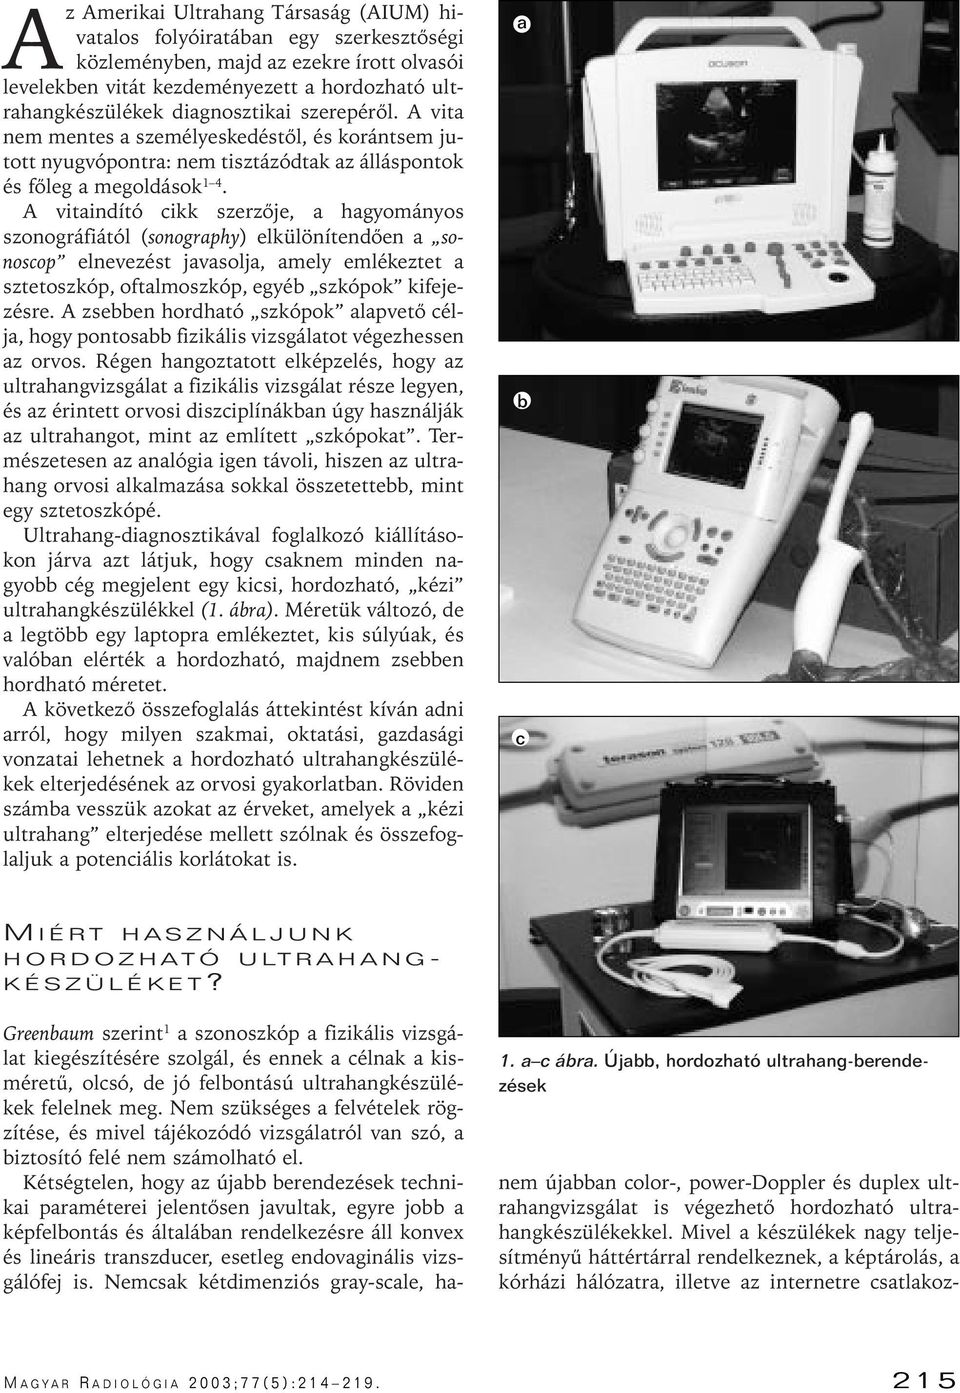 A vitaindító cikk szerzôje, a hagyományos szonográfiától (sonography) elkülönítendôen a sonoscop elnevezést javasolja, amely emlékeztet a sztetoszkóp, oftalmoszkóp, egyéb szkópok kifejezésre.